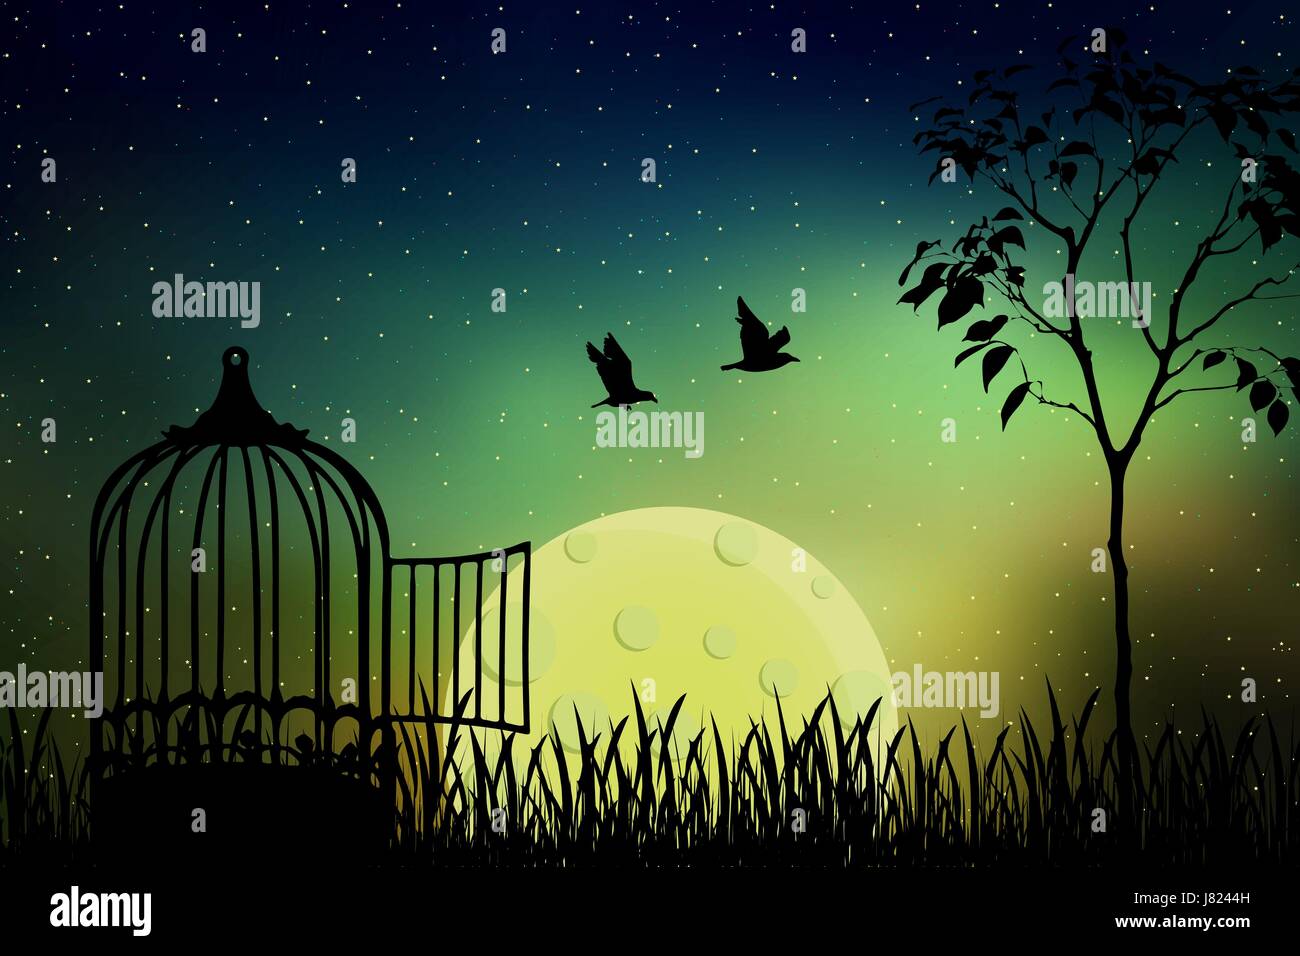 Vögel paar Flucht aus einem Käfig, in die Natur freigesetzt. Schöne und positive Vektor-Illustration mit dem Vollmond und Sternenhimmel Hintergrund. Stock Vektor